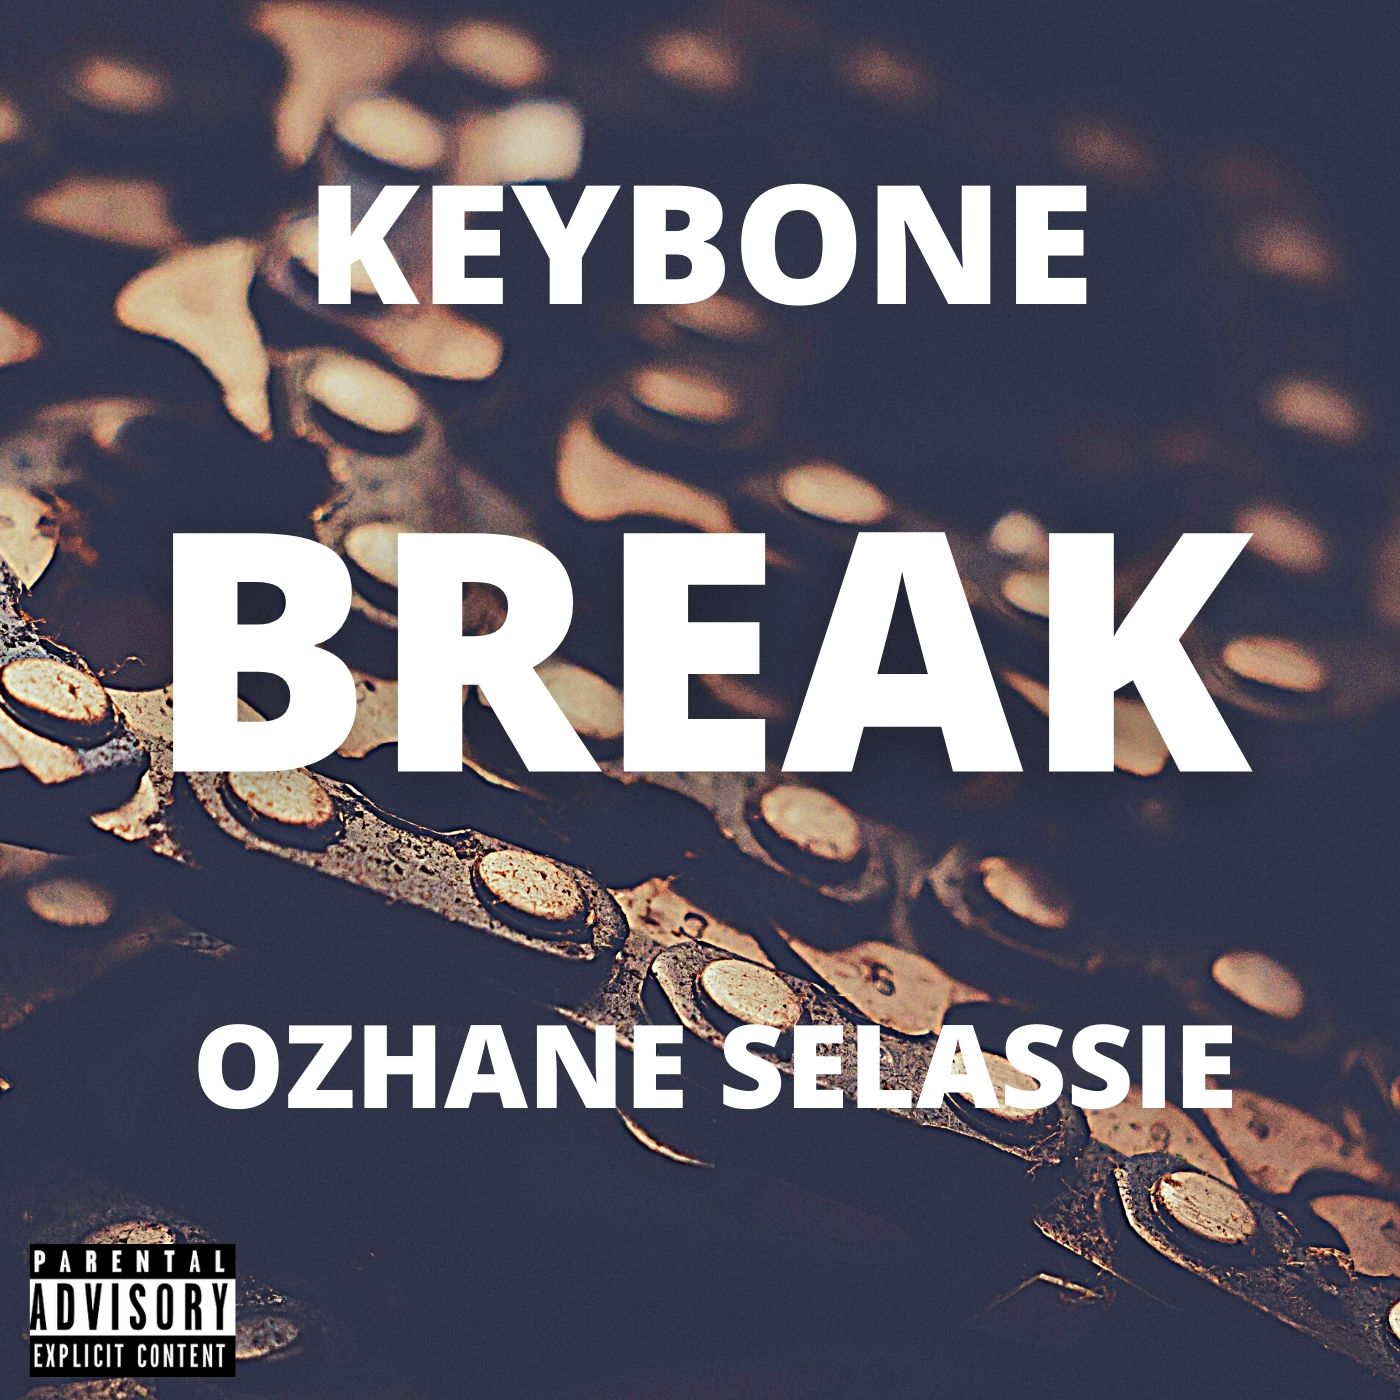 Art for Break feat. Ozhane Selassie by Keybone @officialkeybone